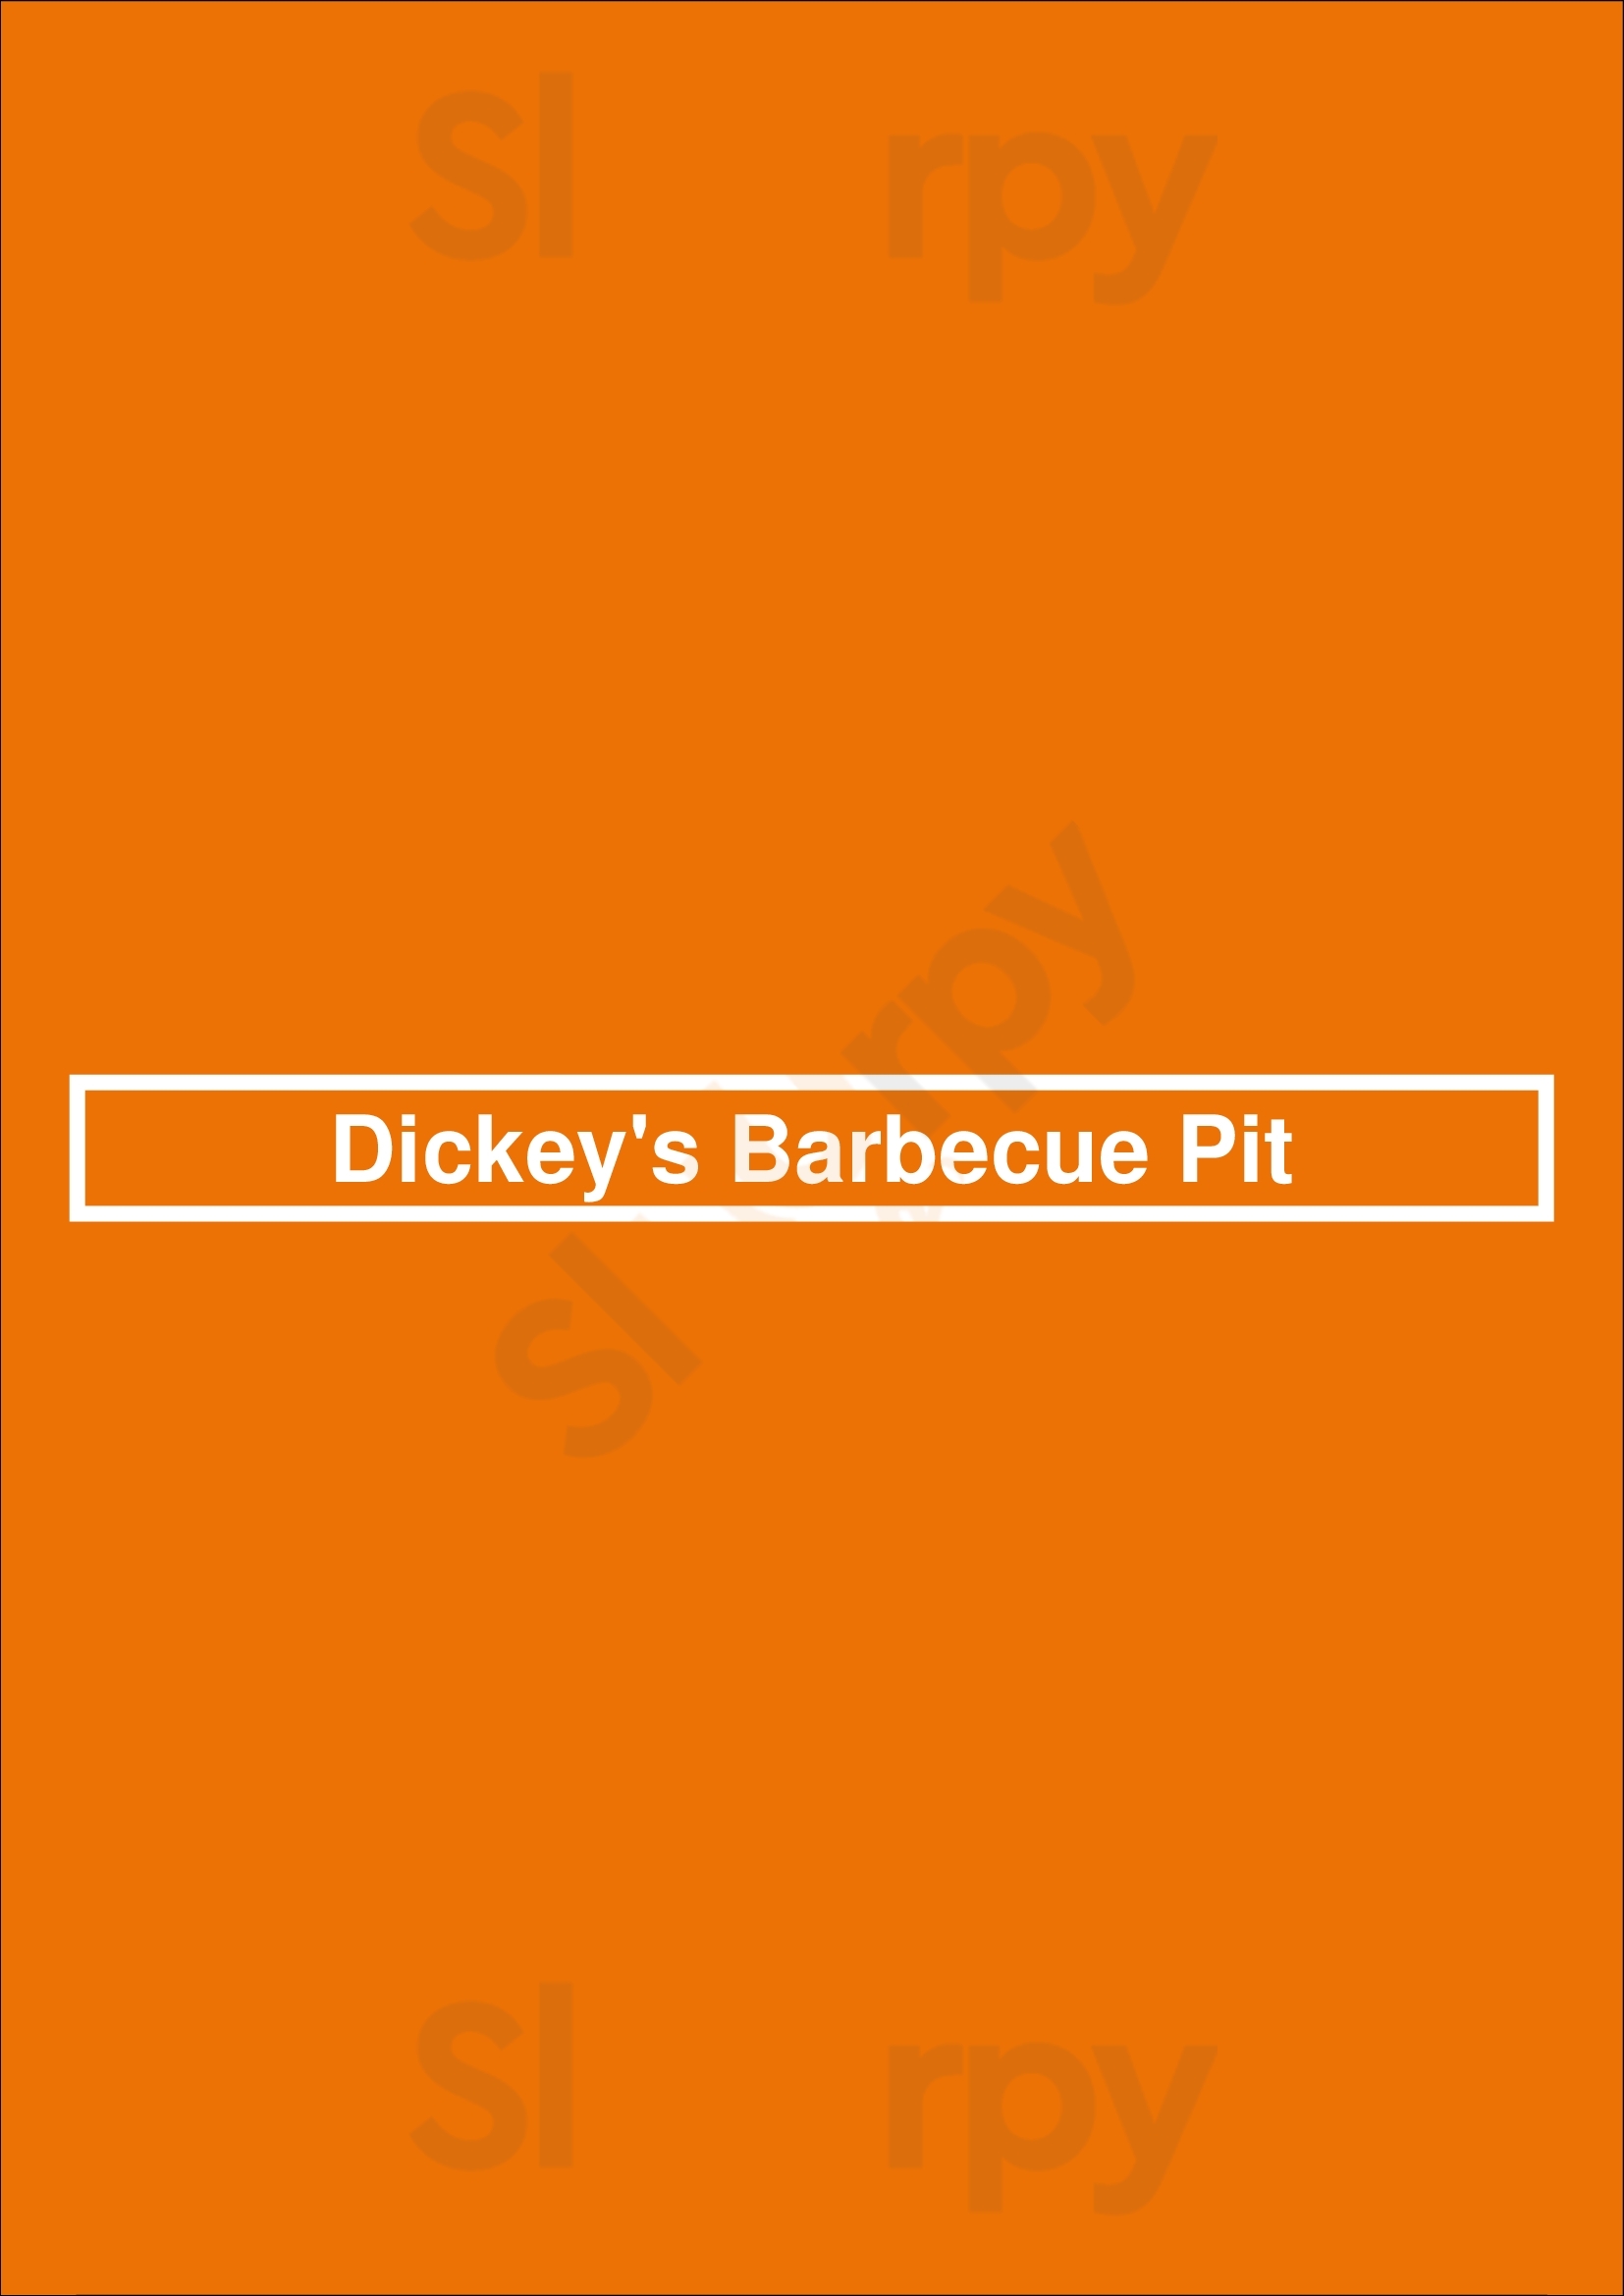 Dickey's Barbecue Pit Denton Menu - 1